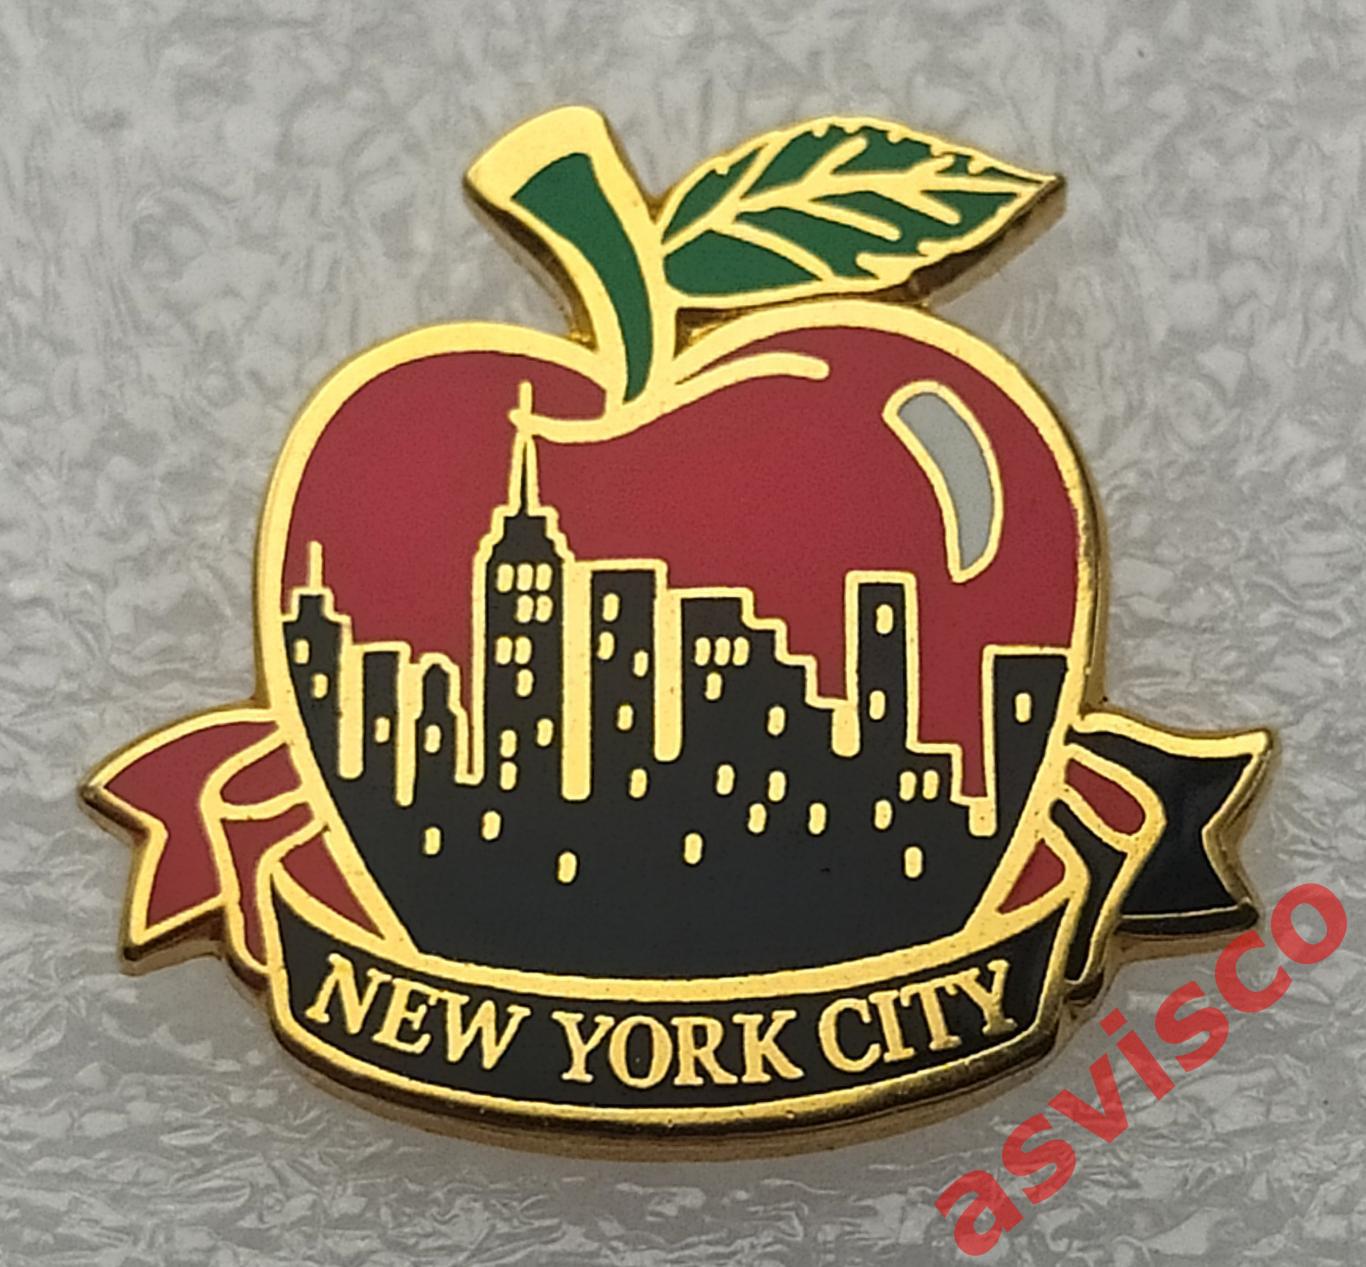 Значок Большое Яблоко - Символ города Нью-Йорк из США.